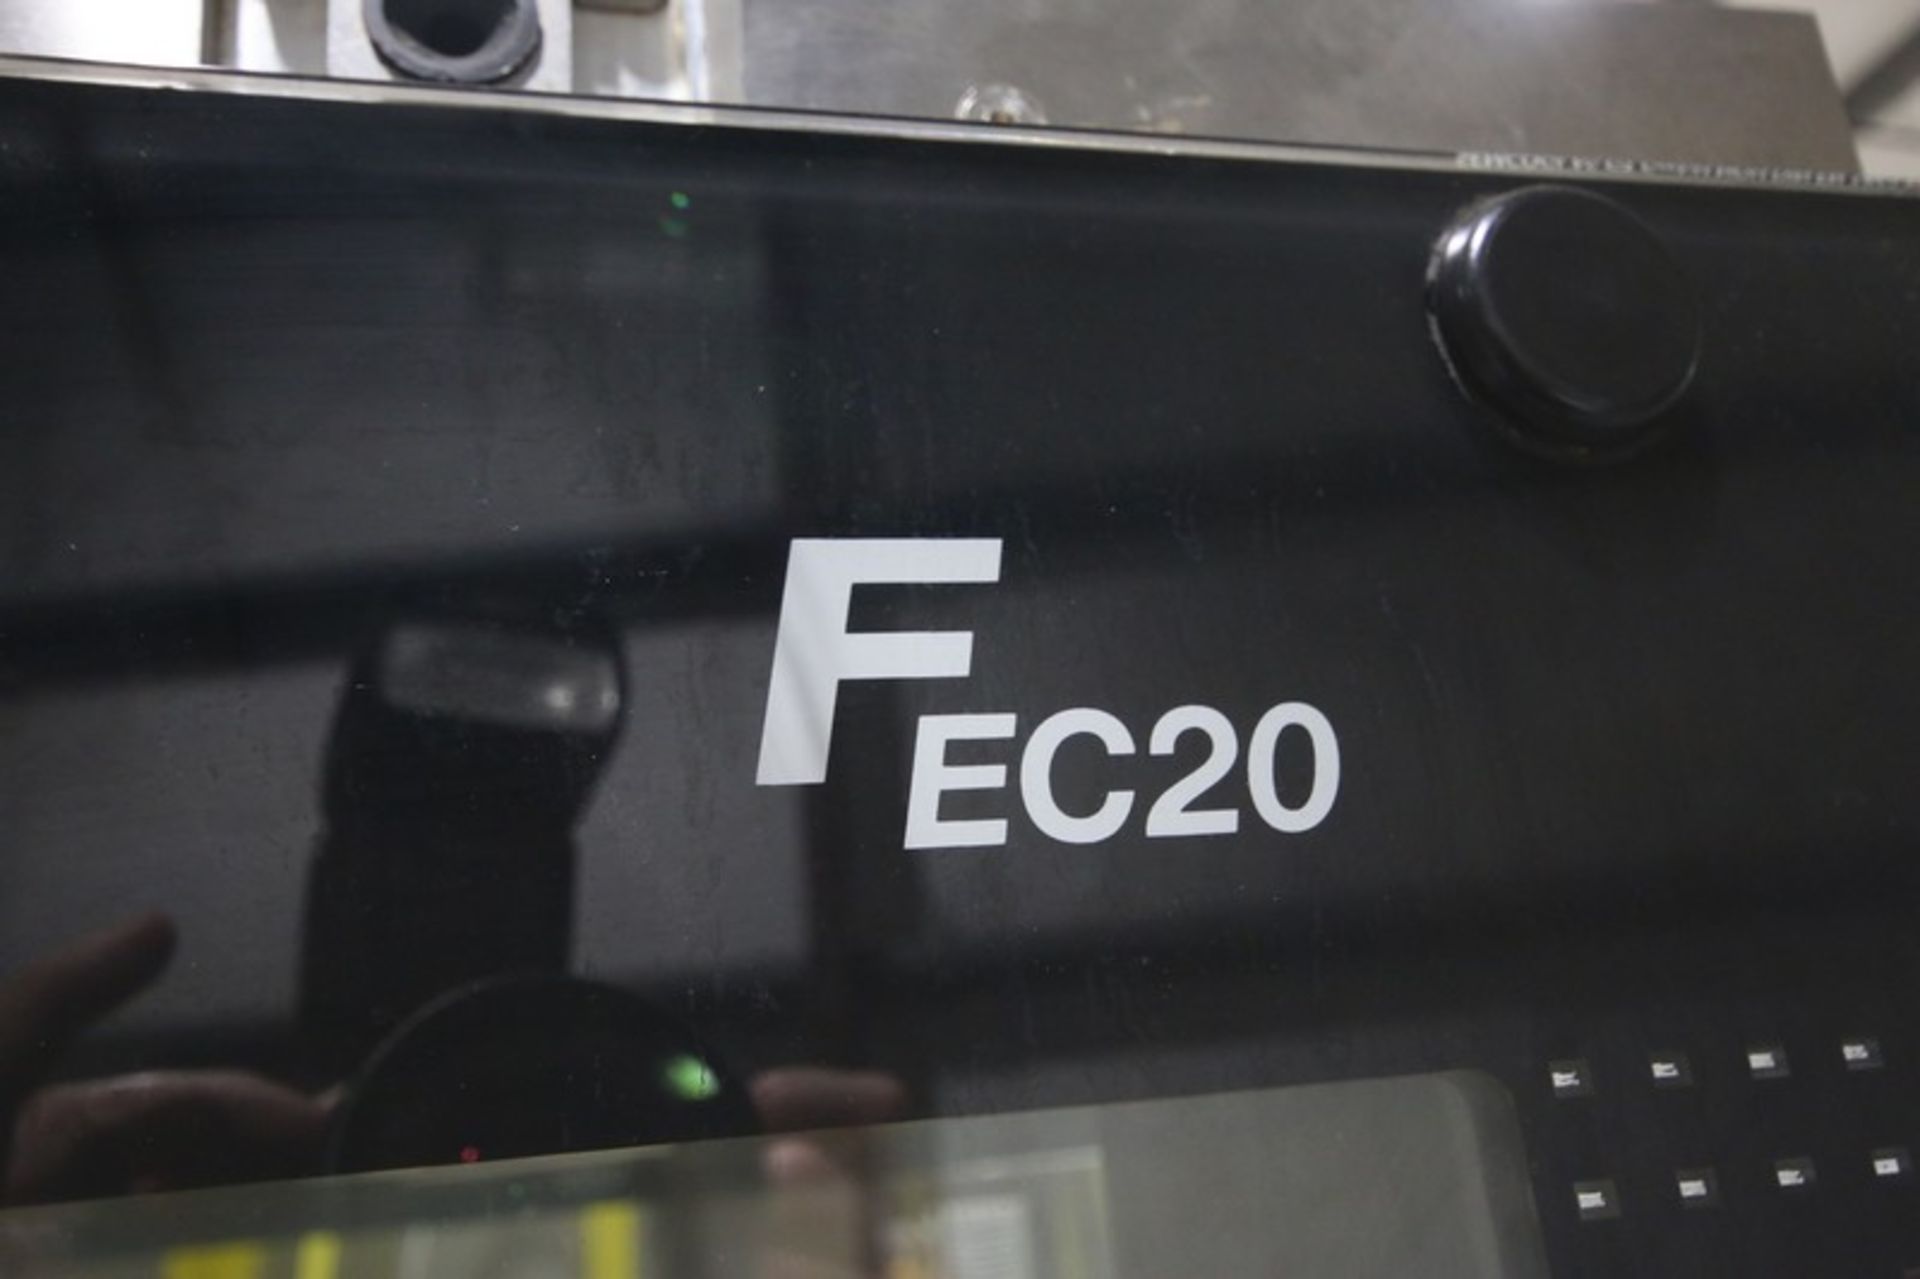 2019 Fette Compacting Capsule Filling Machine (Encapsulator), Model FE20, Machine Designation 9300- - Image 8 of 38